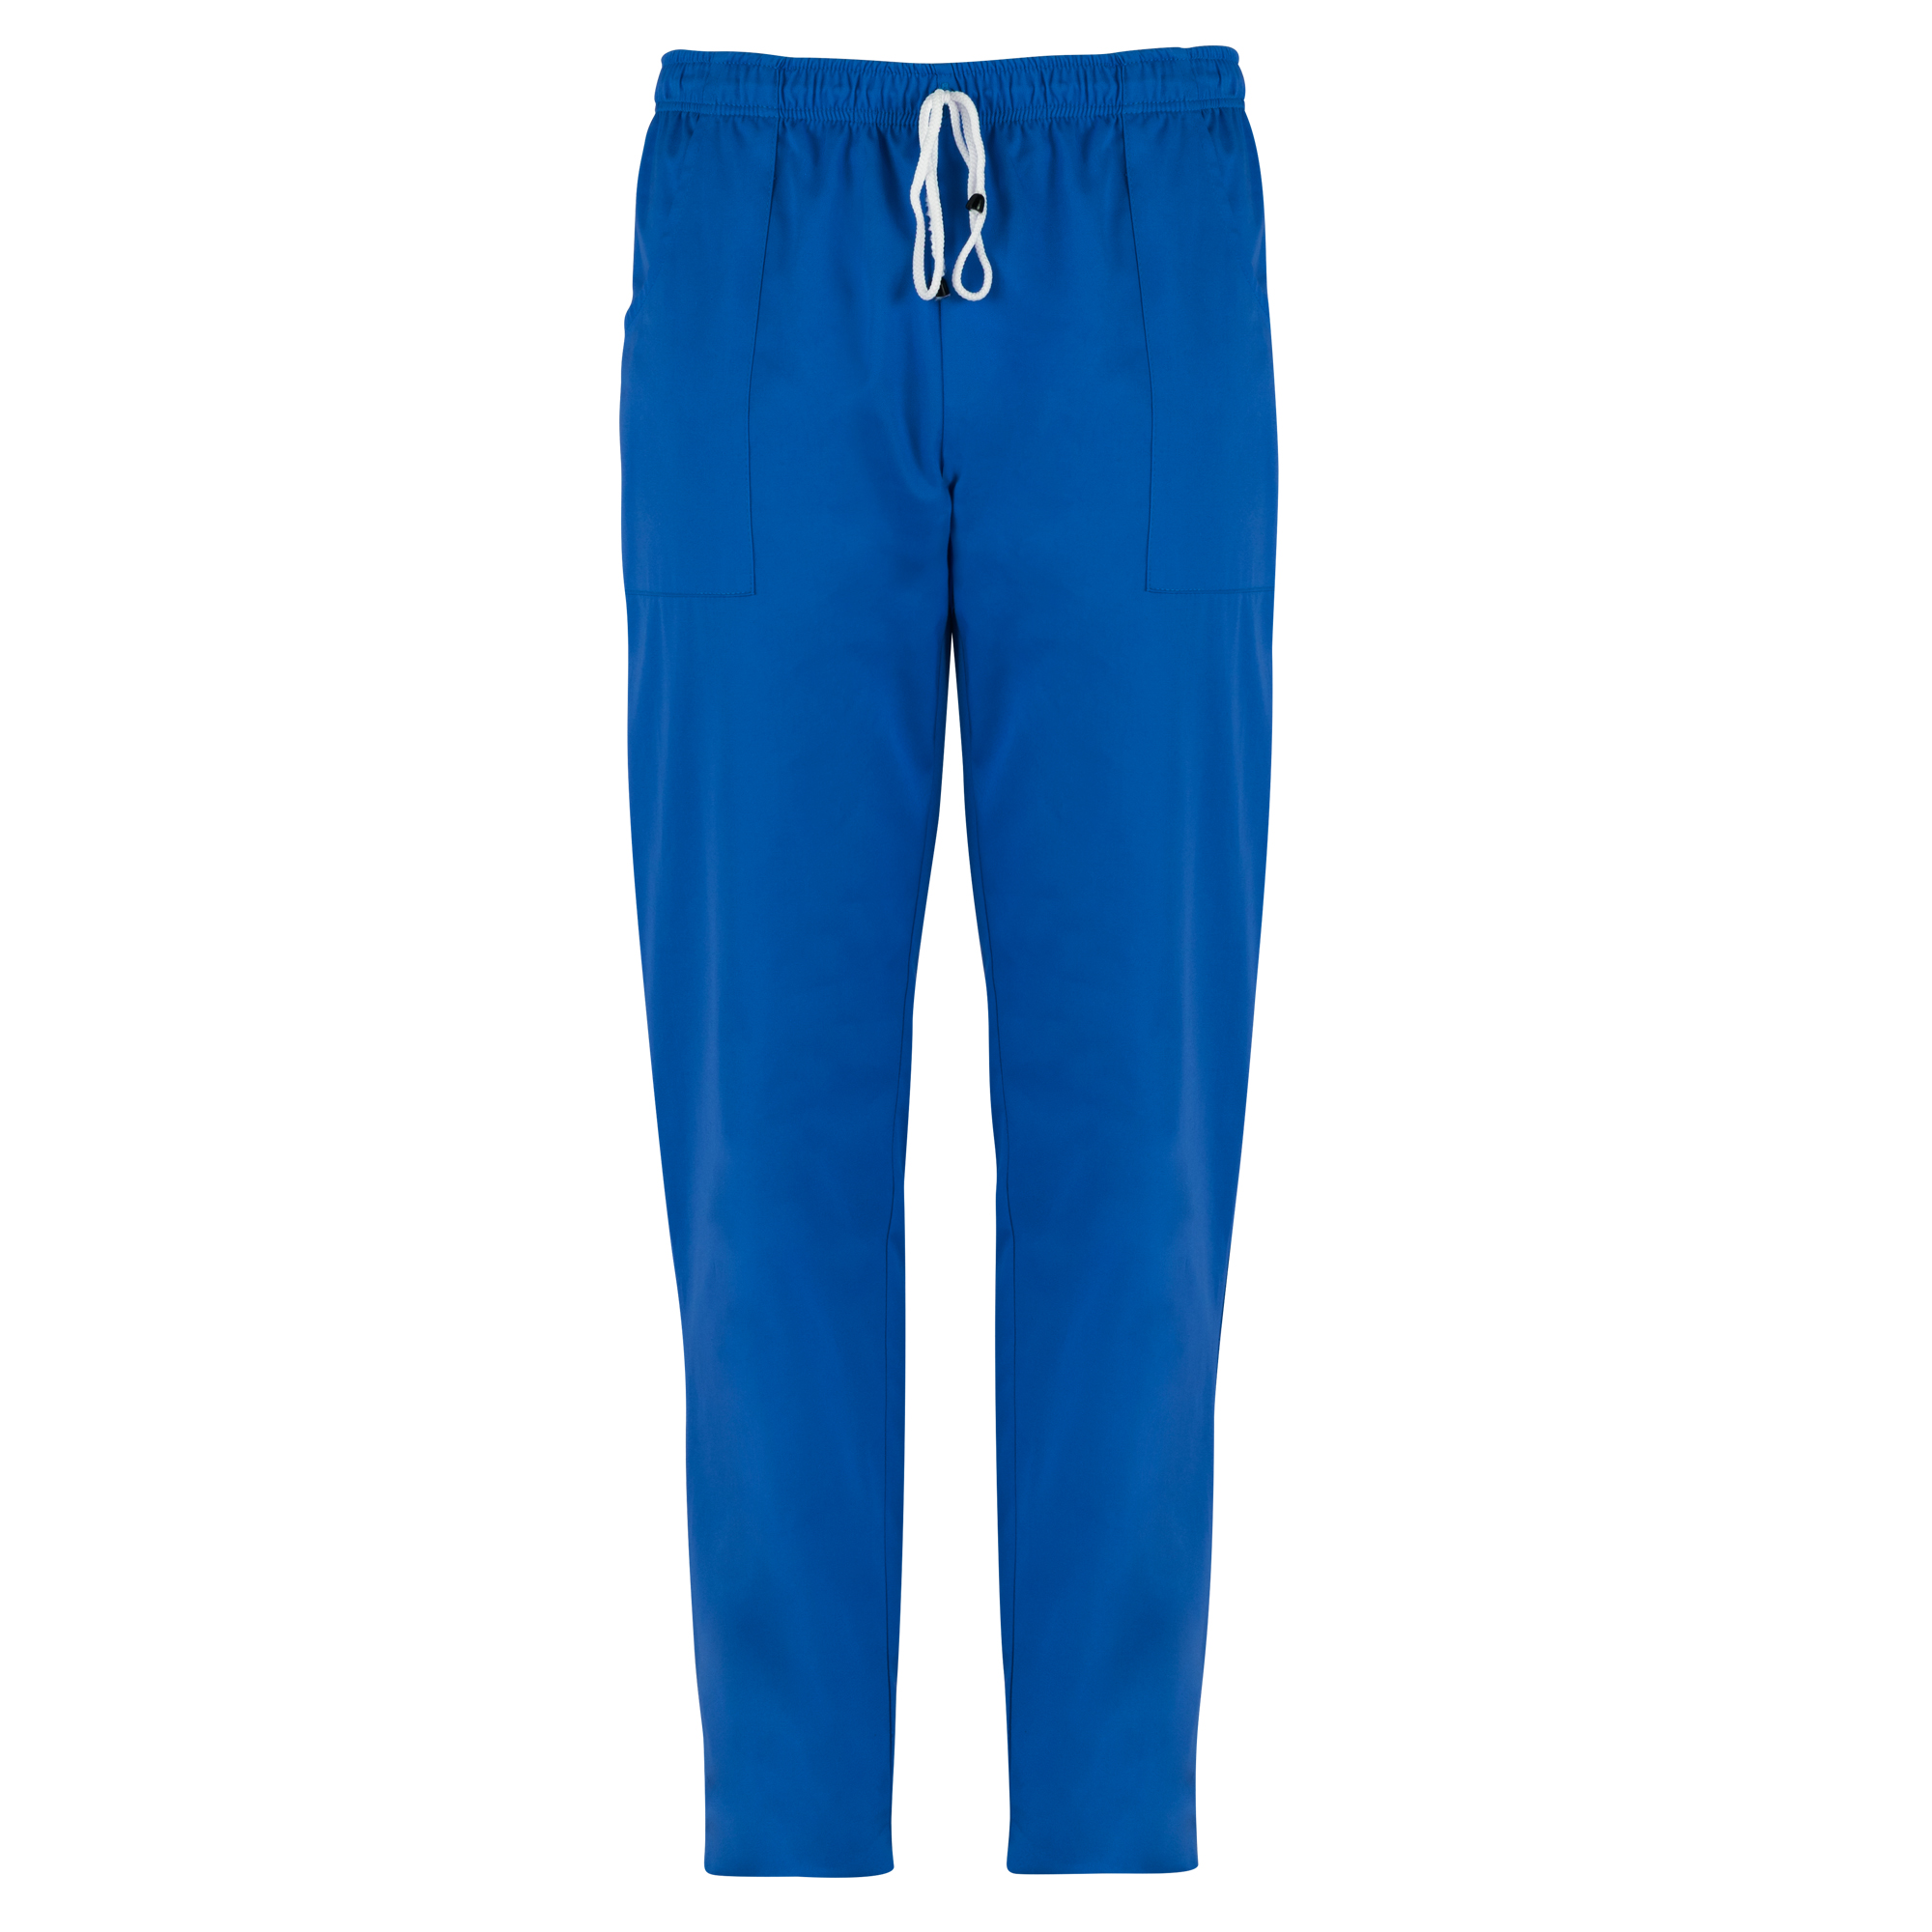 Pantalone Pitagora - unisex - 100 cotone - taglia XL - bluette - Giblor's